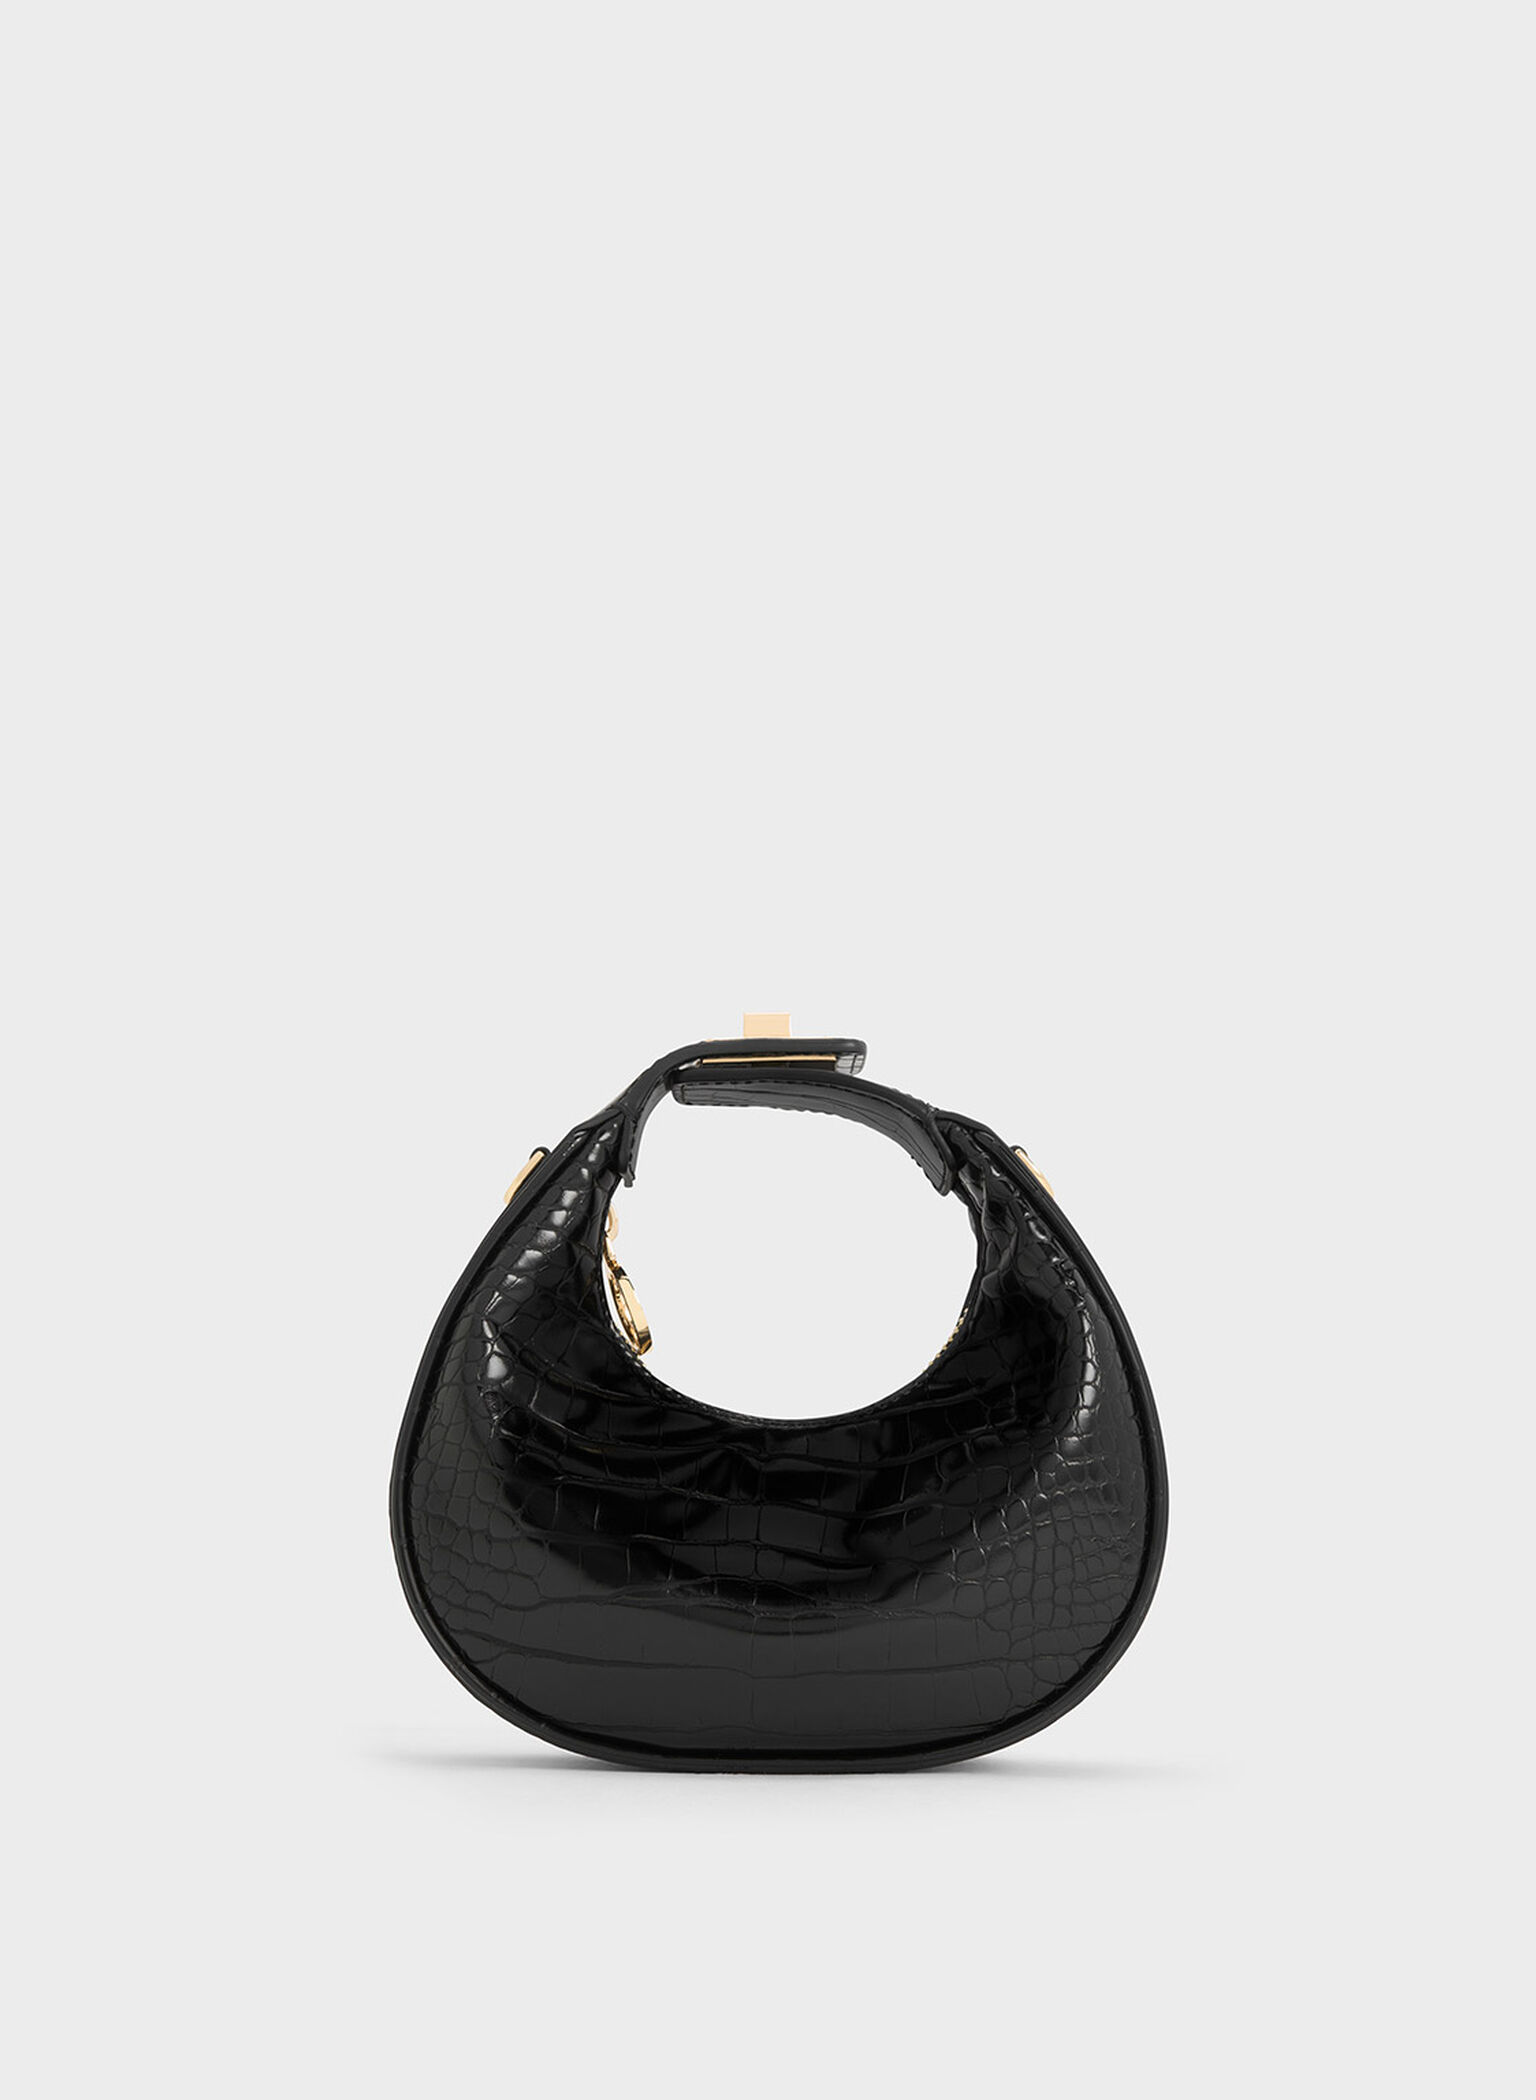 Black Vegan Leather Backpacks Twist Lock Quilted Bags